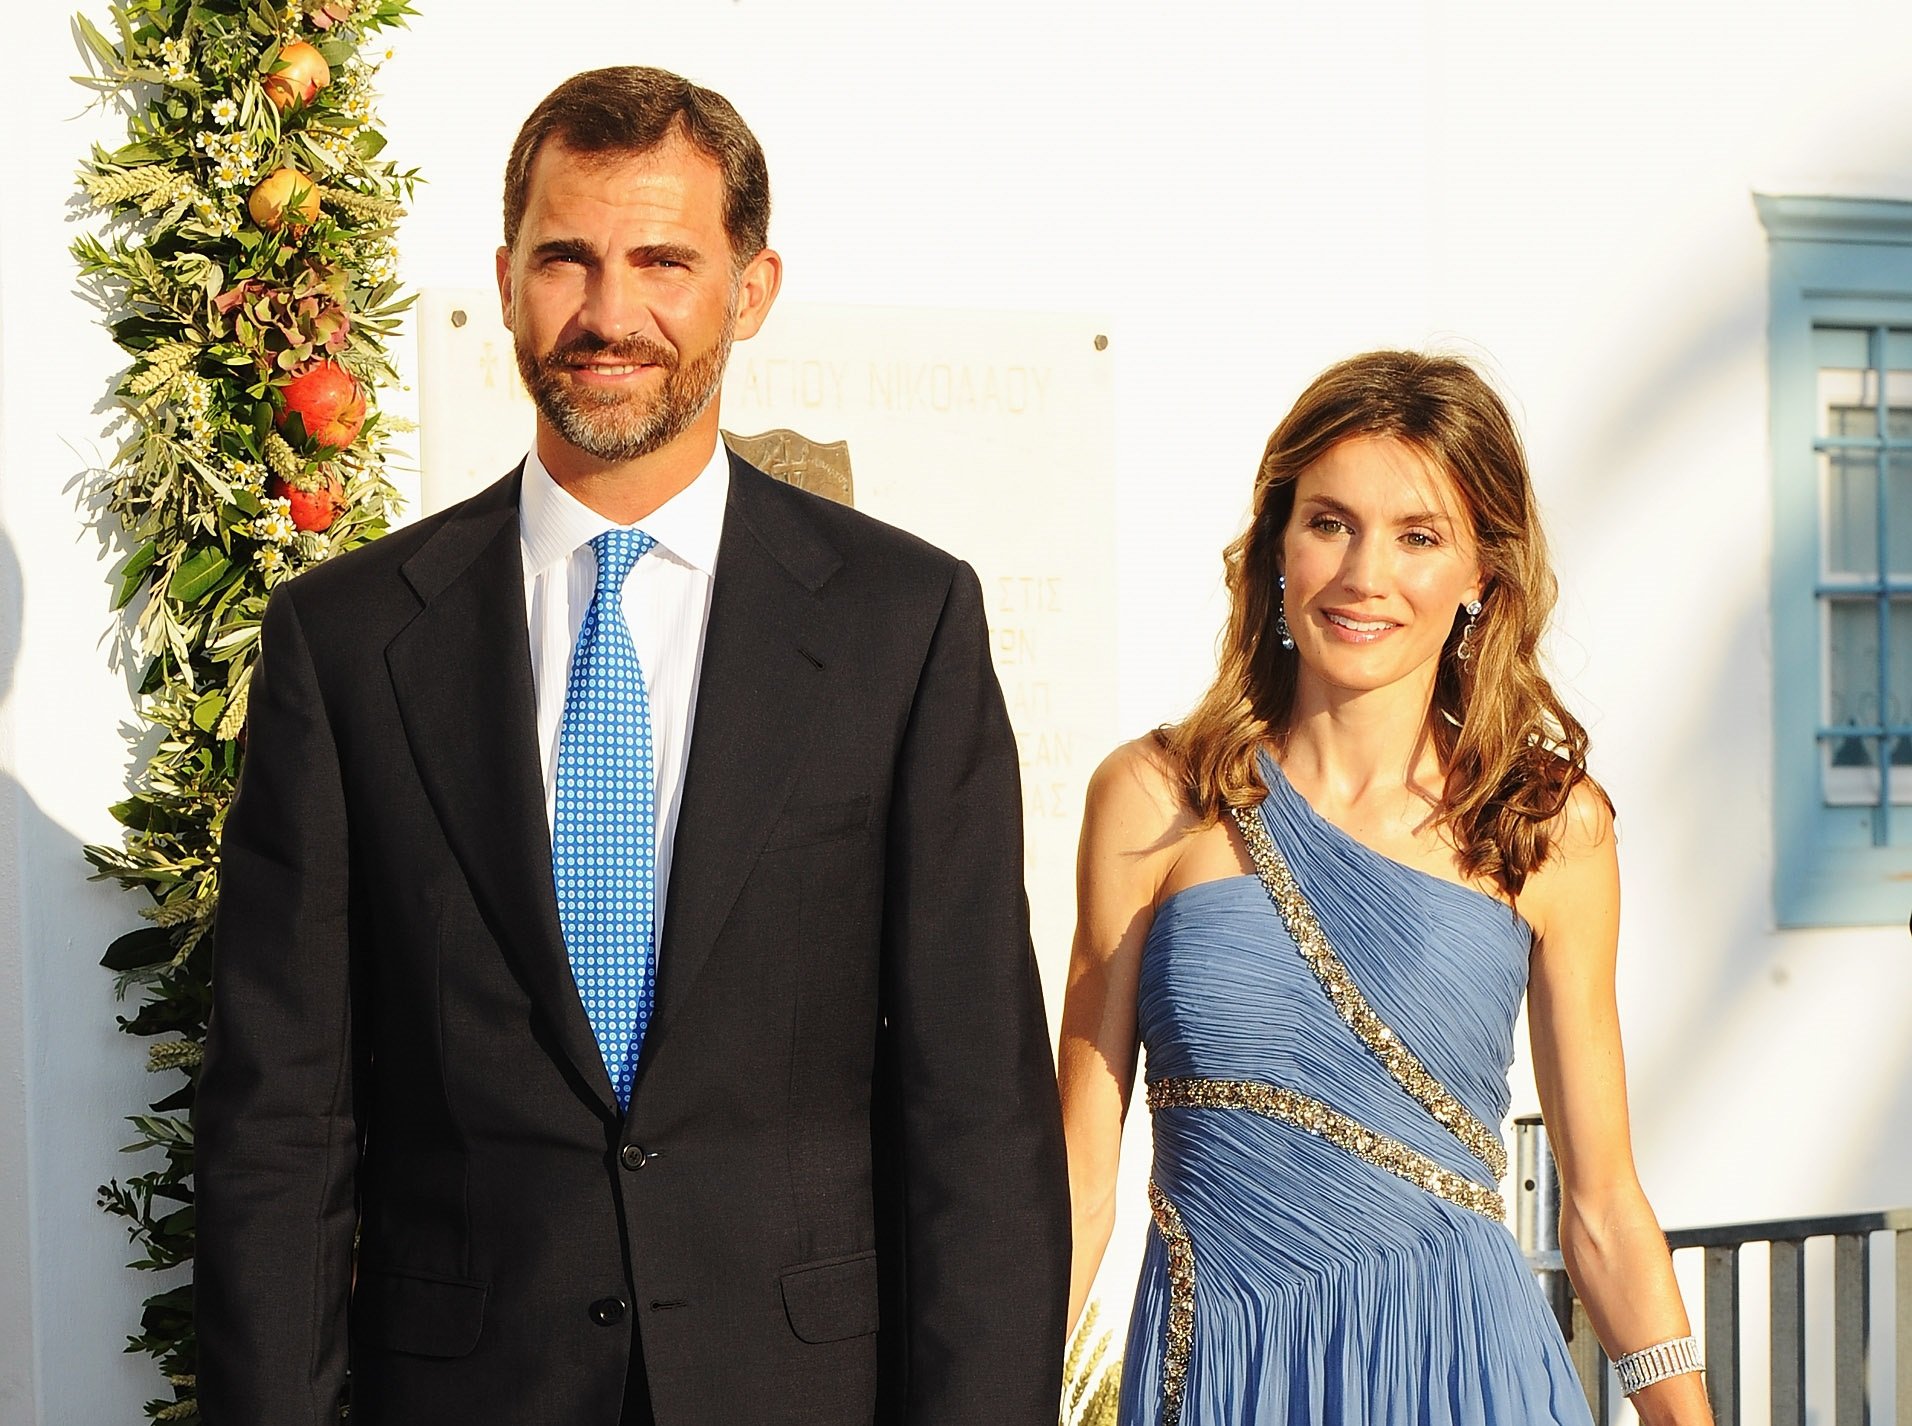 Don Felipe y doña Letizia en la boda de Nicolás de Grecia y Tatiana Blatnik, el 25 de agosto de 2010 en Spetses, Grecia. | Foto: Getty Images